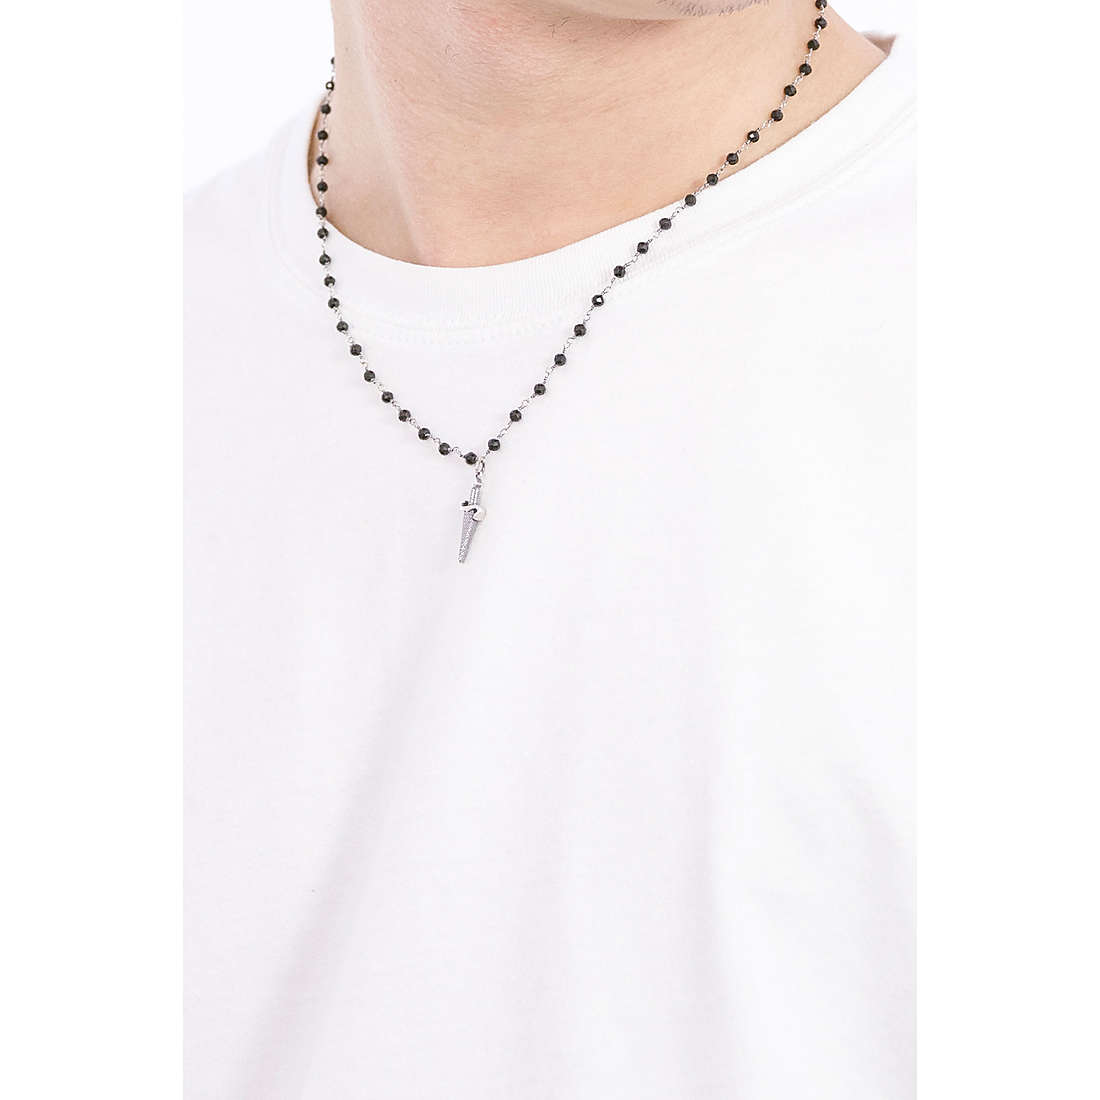 Cesare Paciotti necklaces Fibre man JPCL1968V wearing